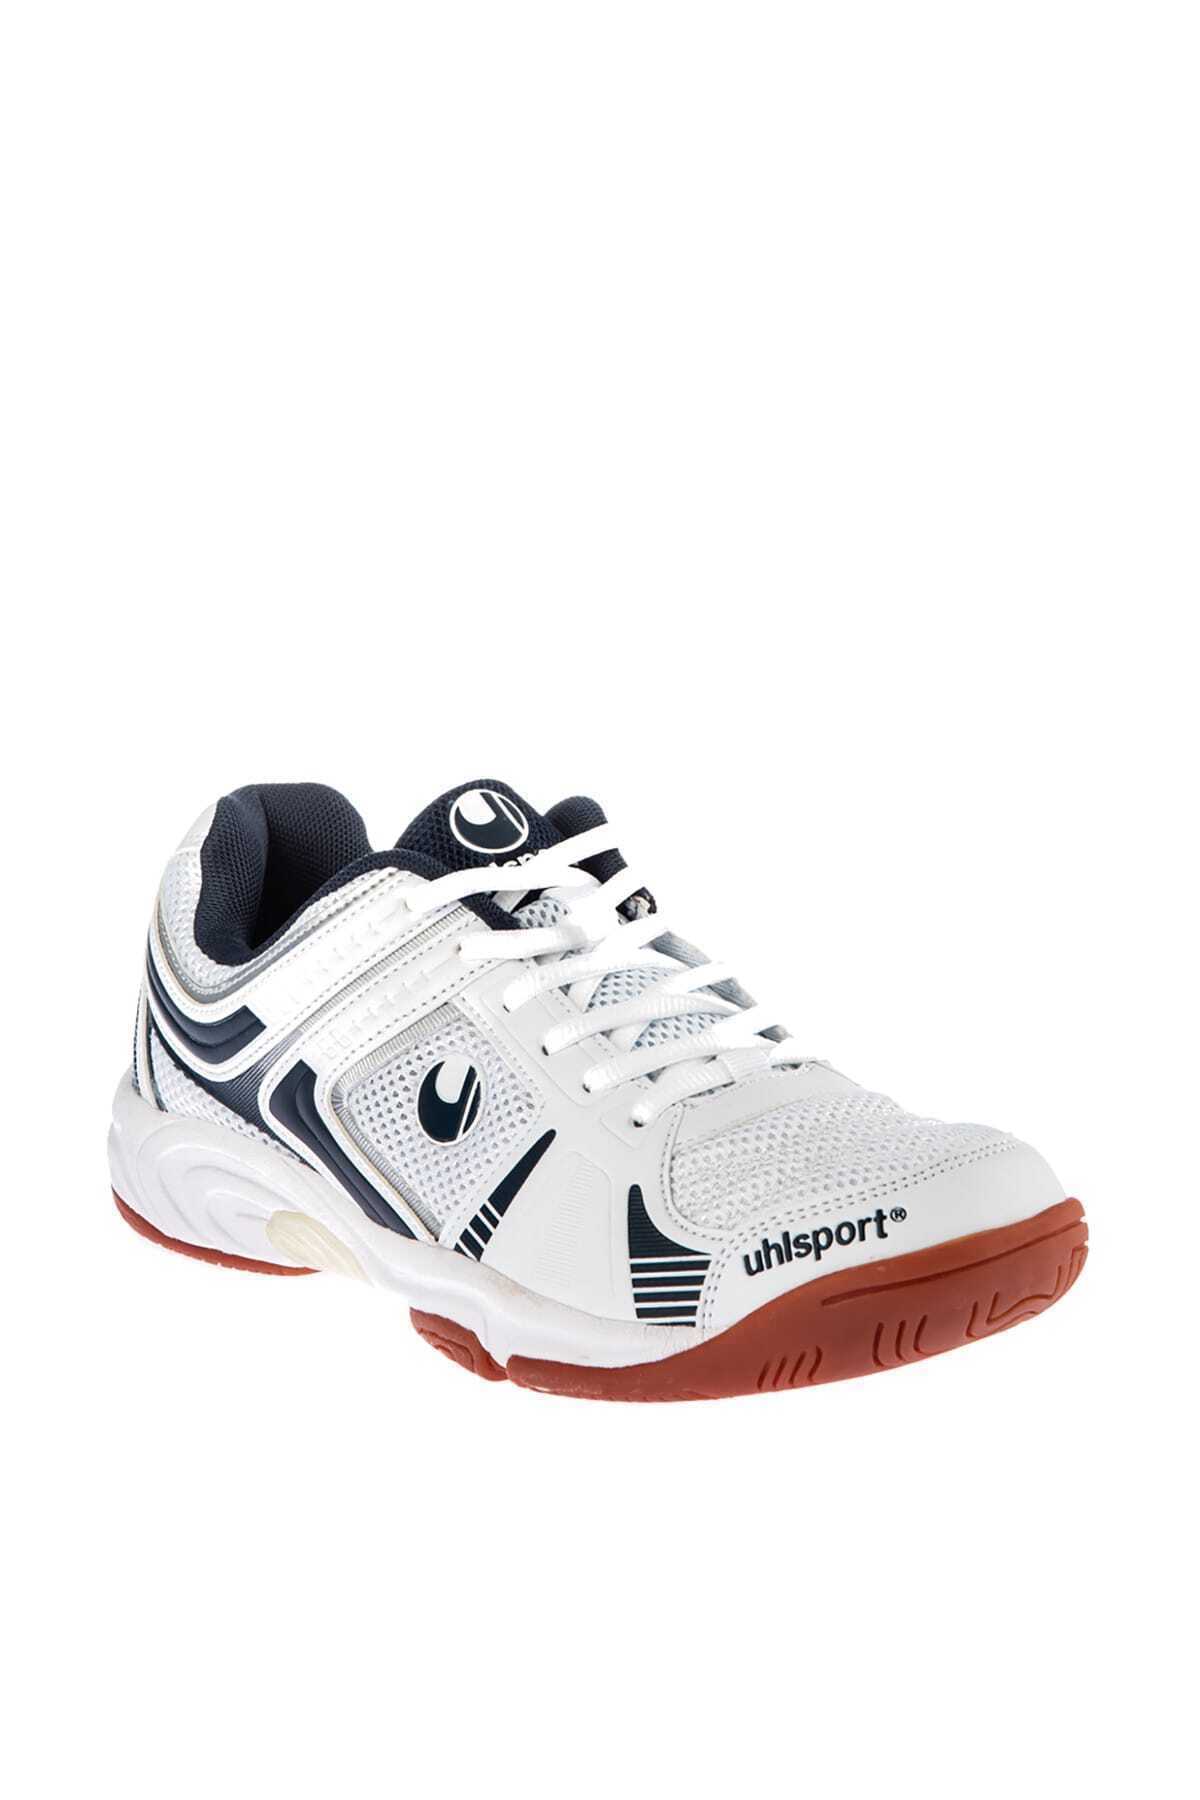 فروش پستی ست کفش والیبال مردانه شیک UHLSPORT کد ty2463968